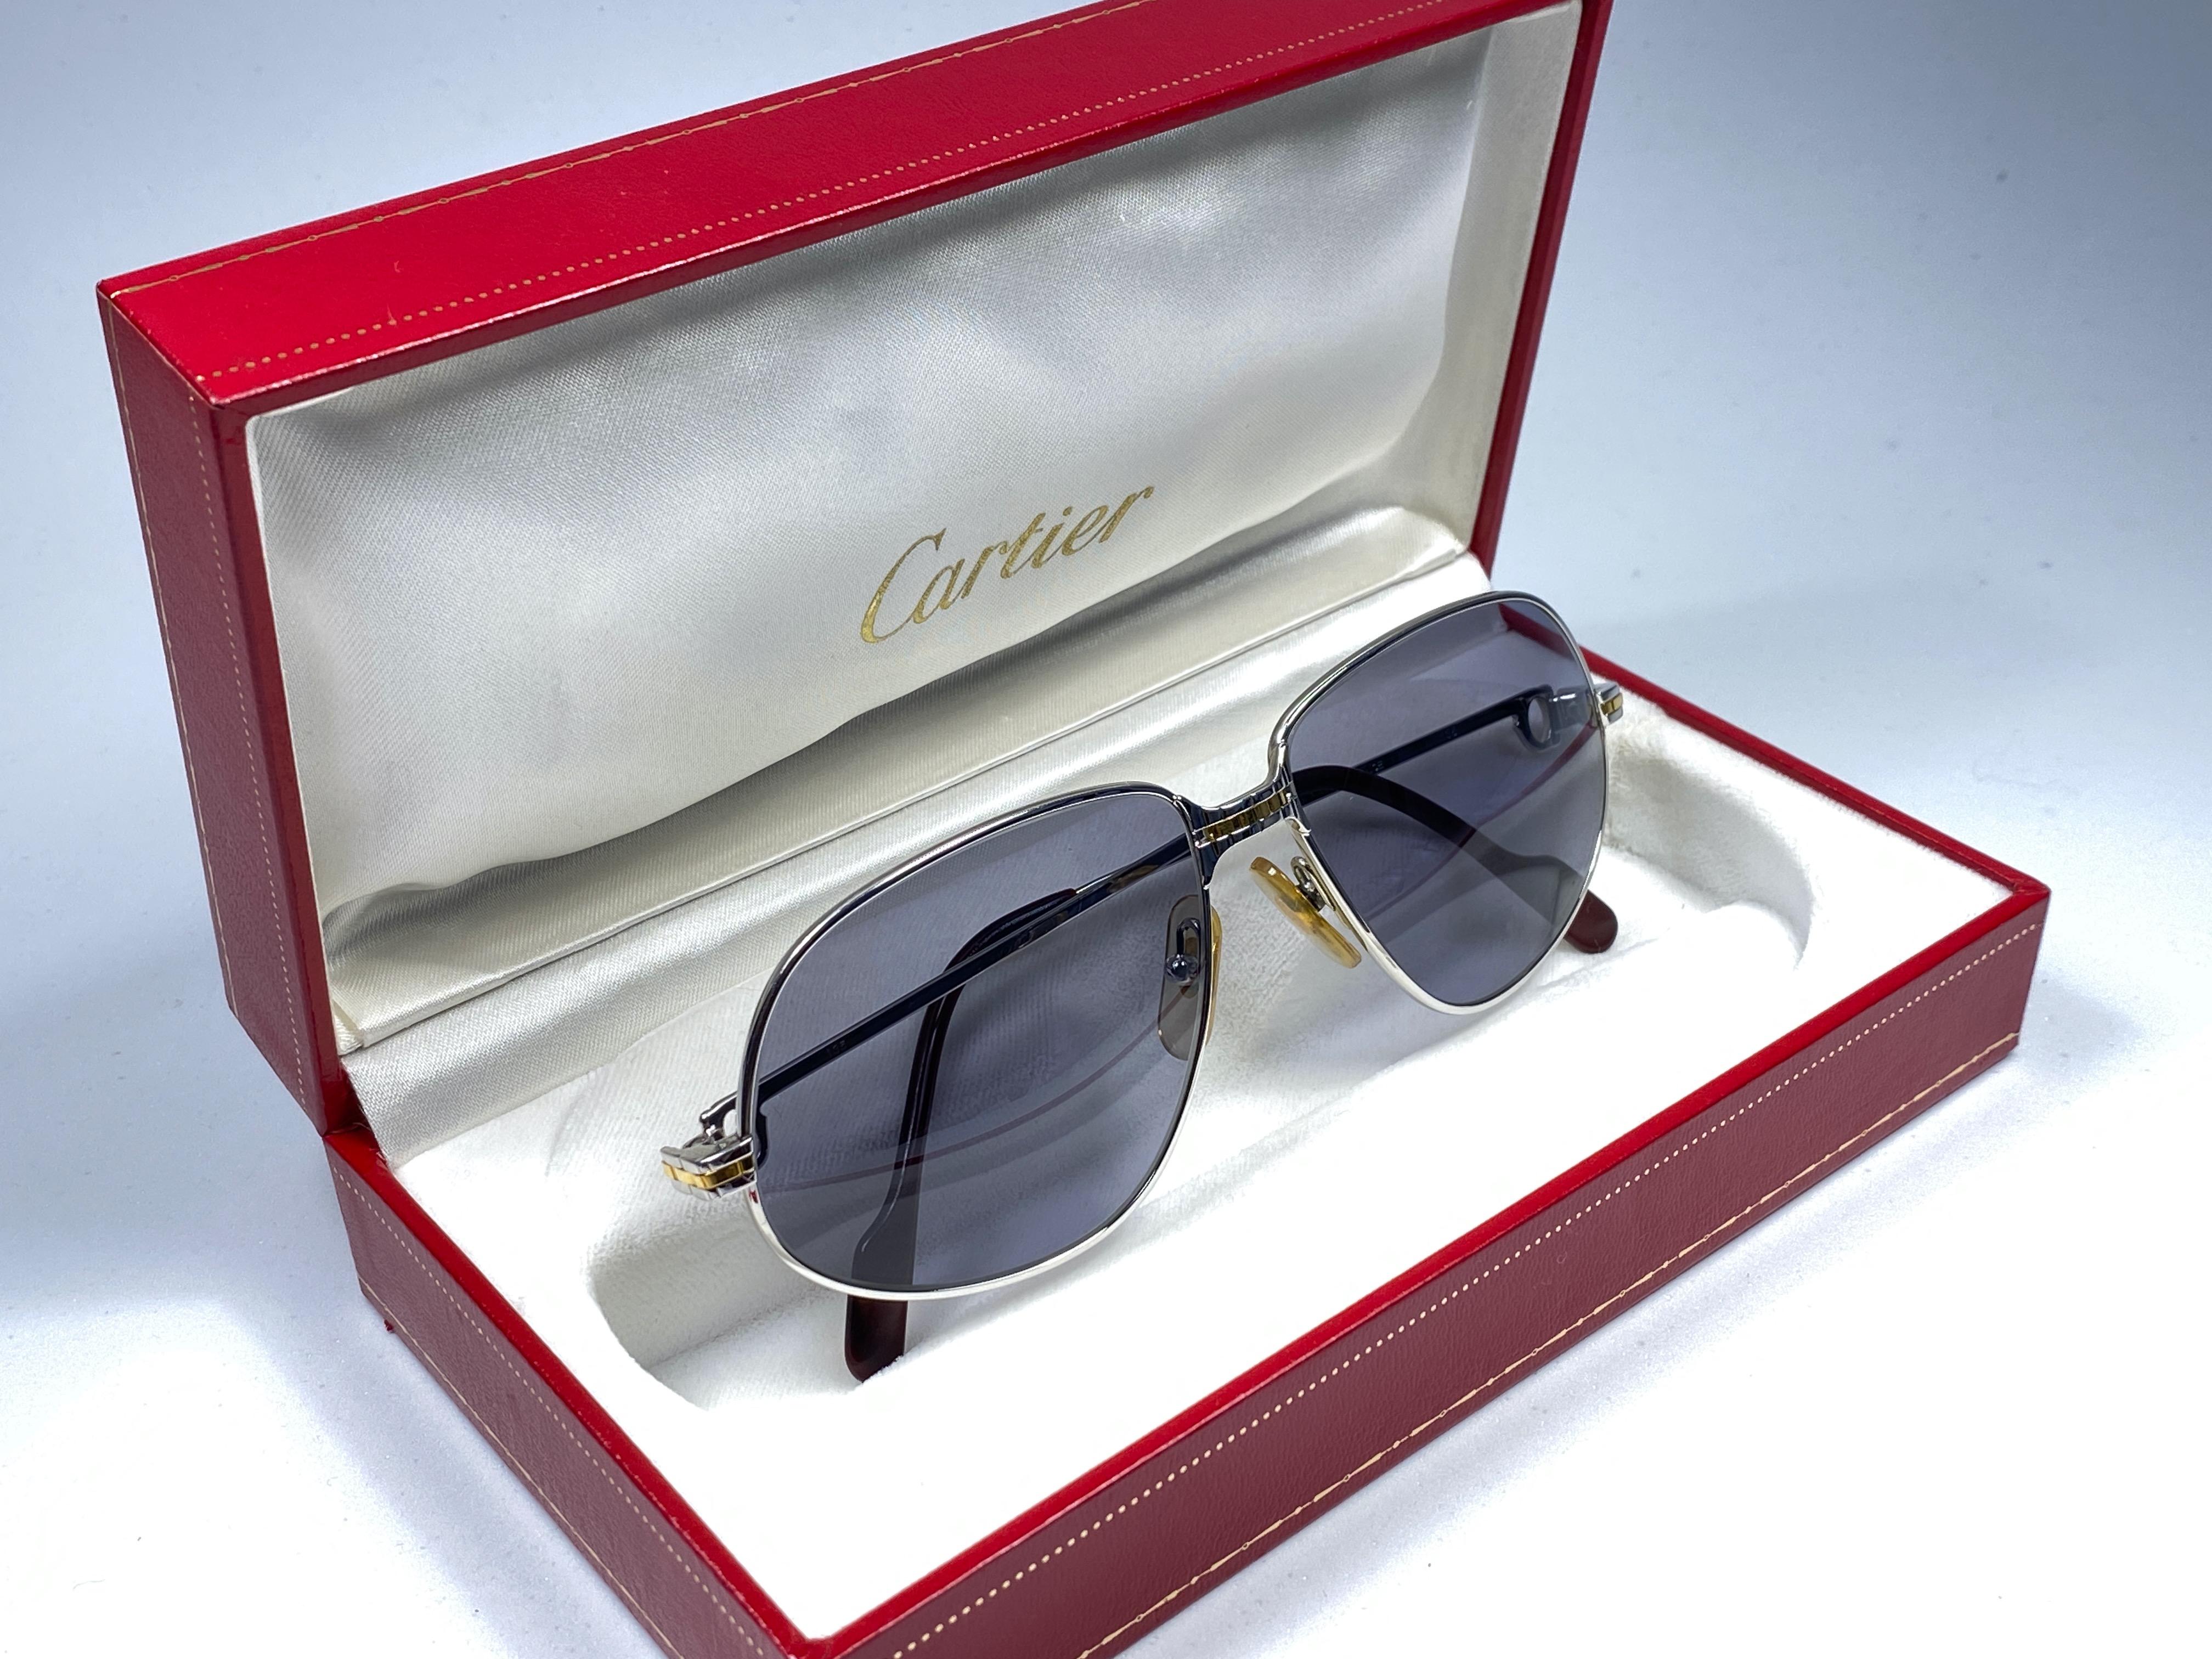 New 1988 Cartier Panthere Sonnenbrille mit grauen (uv-Schutz) Gläsern.  
Der Rahmen ist mit der Vorderseite und den Seiten in Gelb- und Weißgold. Alle Punzierungen. burgunderfarbene Ohrpolster. 
Beide Arme tragen das C von Cartier auf der Schläfe.